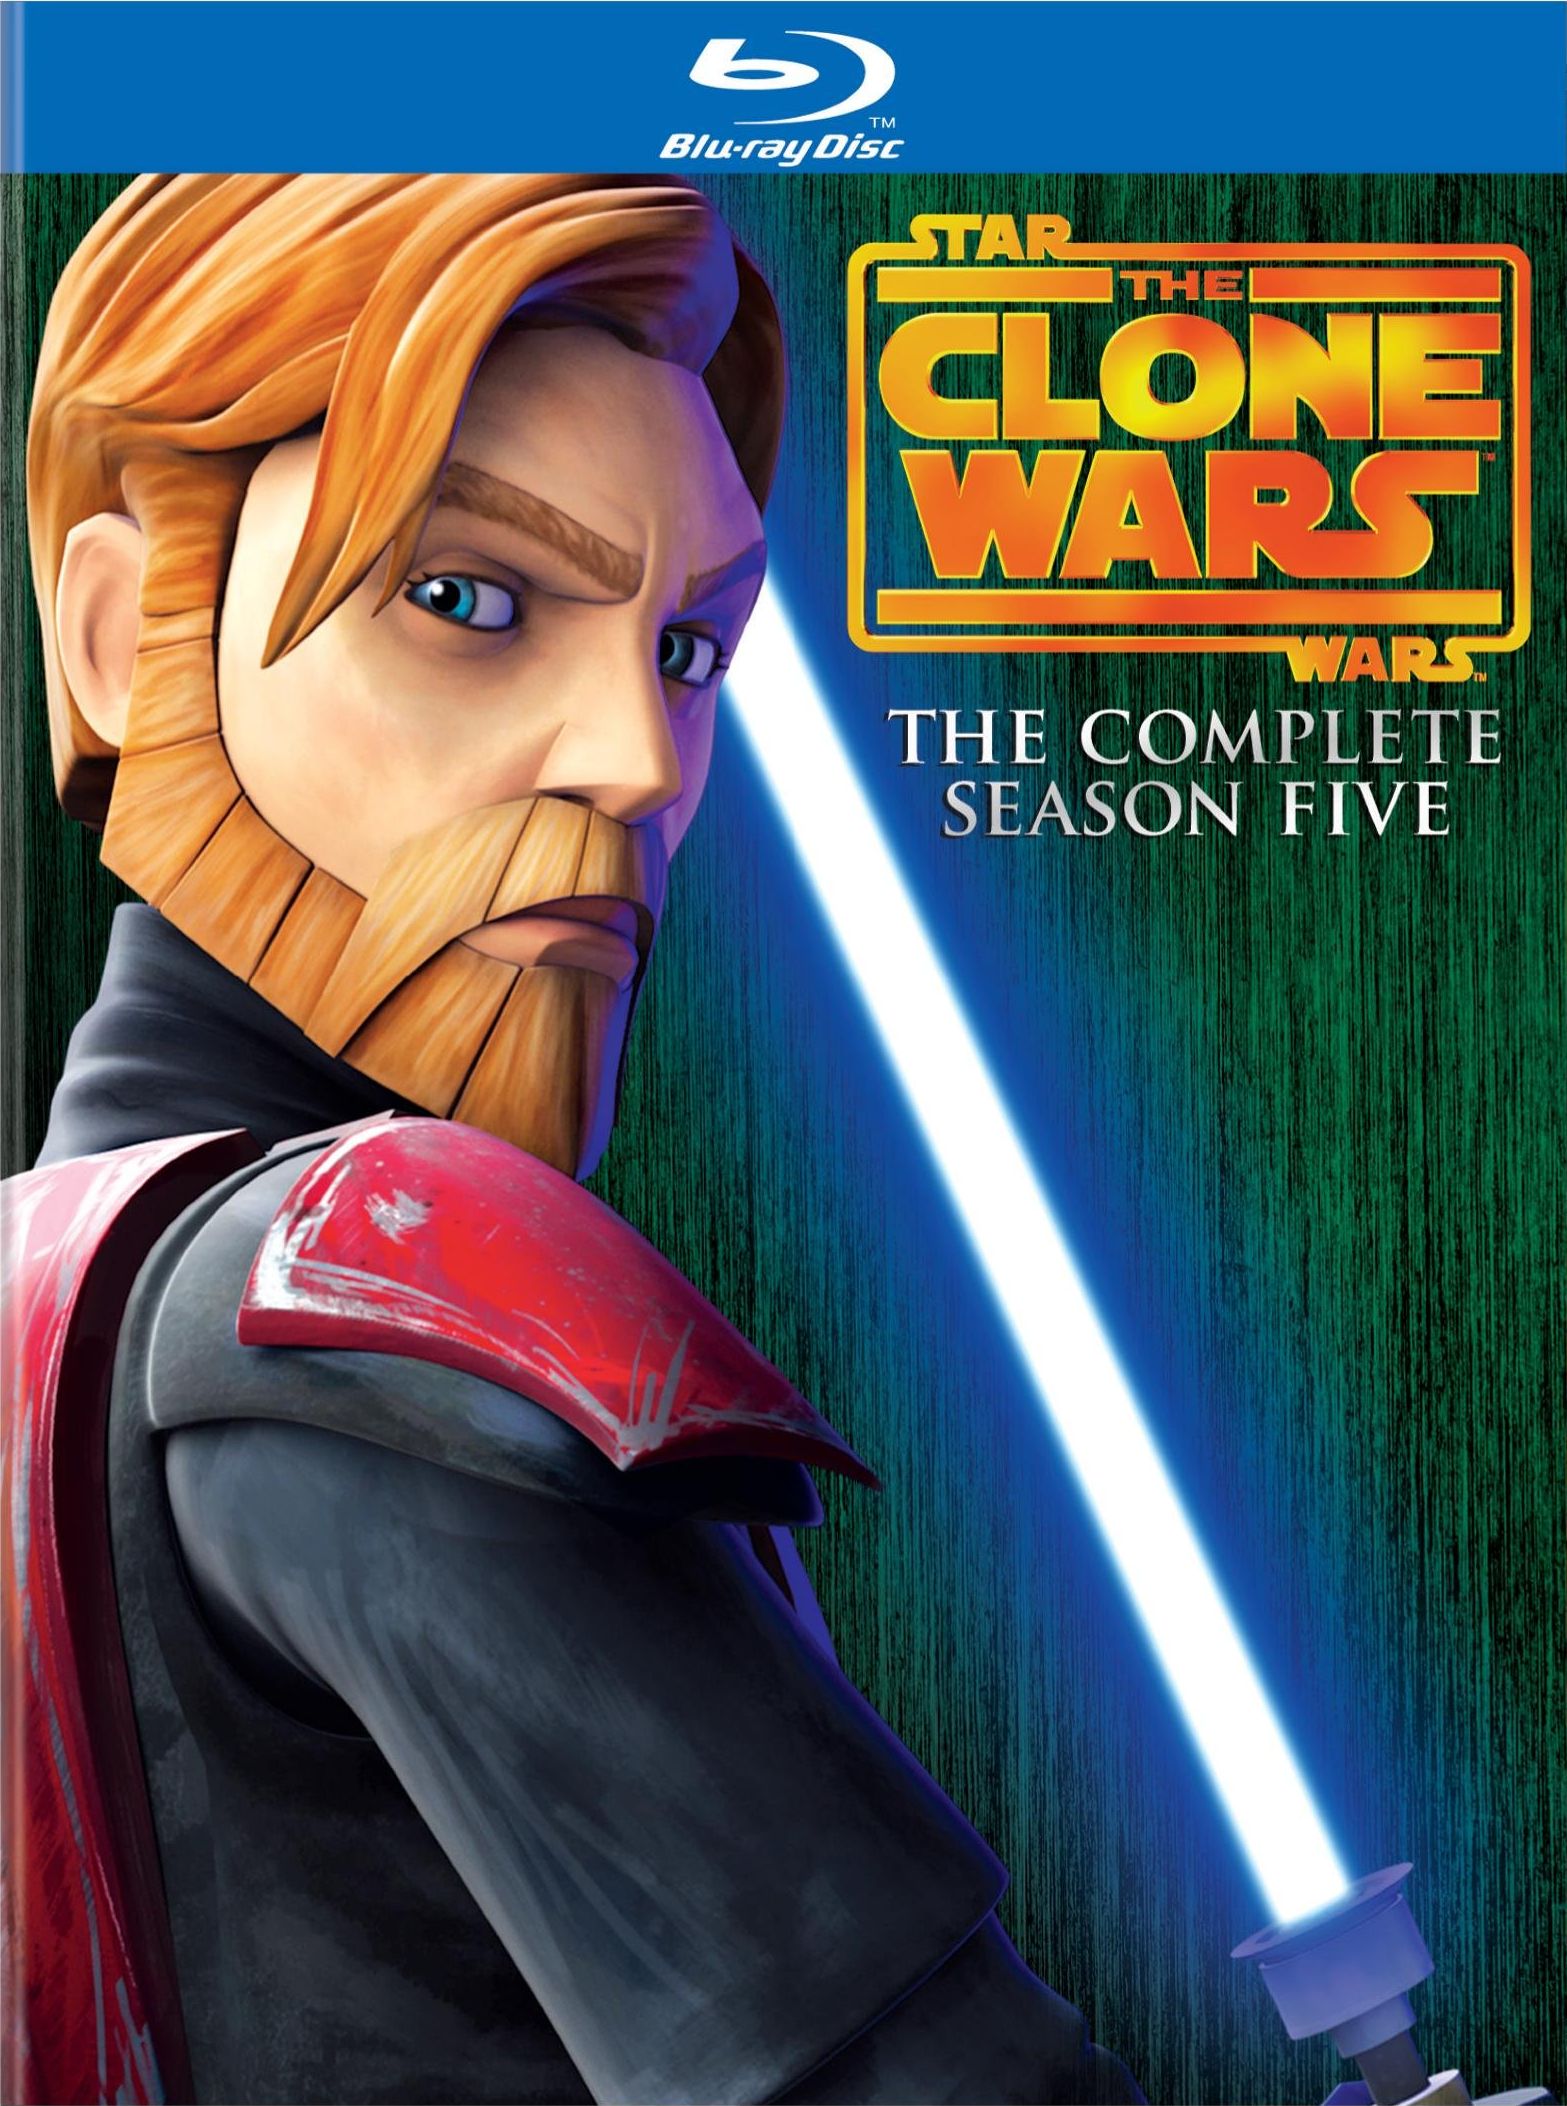 Star Wars: The Clone Wars TV Series 20082019 - IMDb